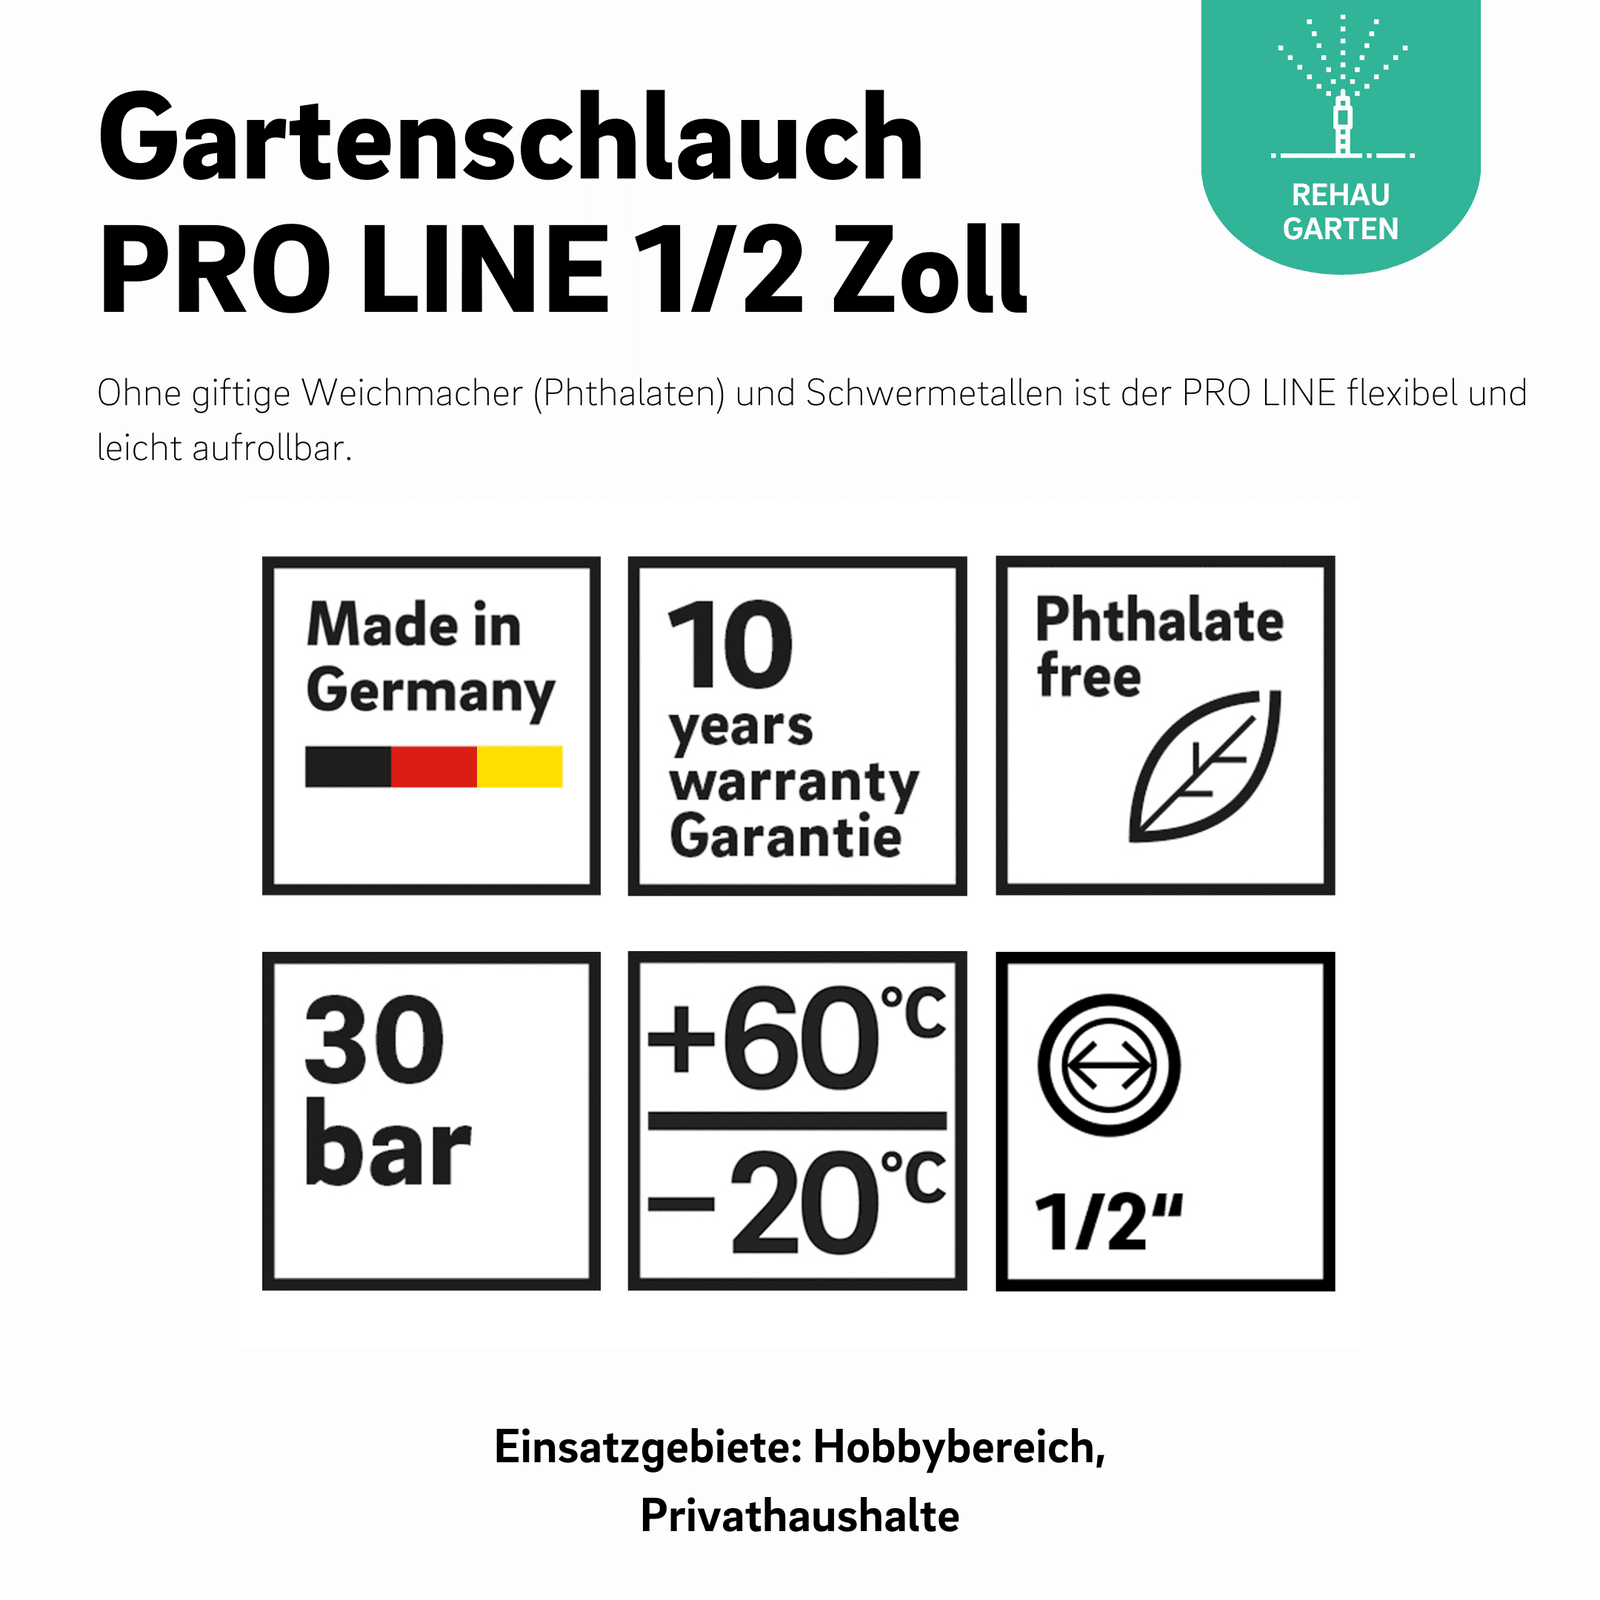 Gartenschlauch PRO LINE 1/2 Zoll - REHAU Gartenshop